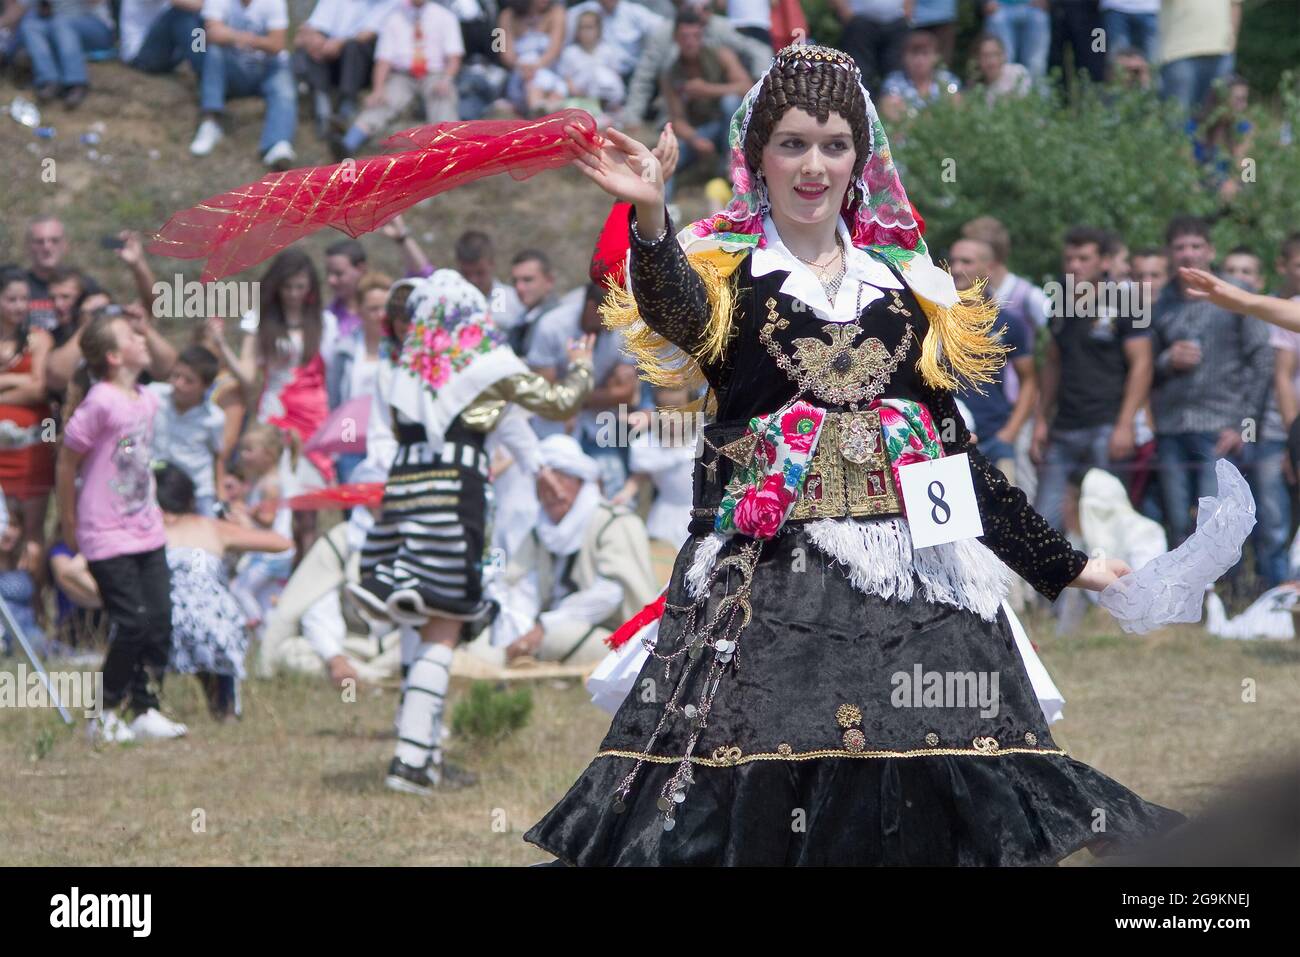 Lepushe, Albanien - 11. August 2012: Schönes Mädchen tanzt in traditioneller albanischer Kleidung und wird zum 'Miss Mountain 2012' gekrönt (Albanisch: Miss Stockfoto